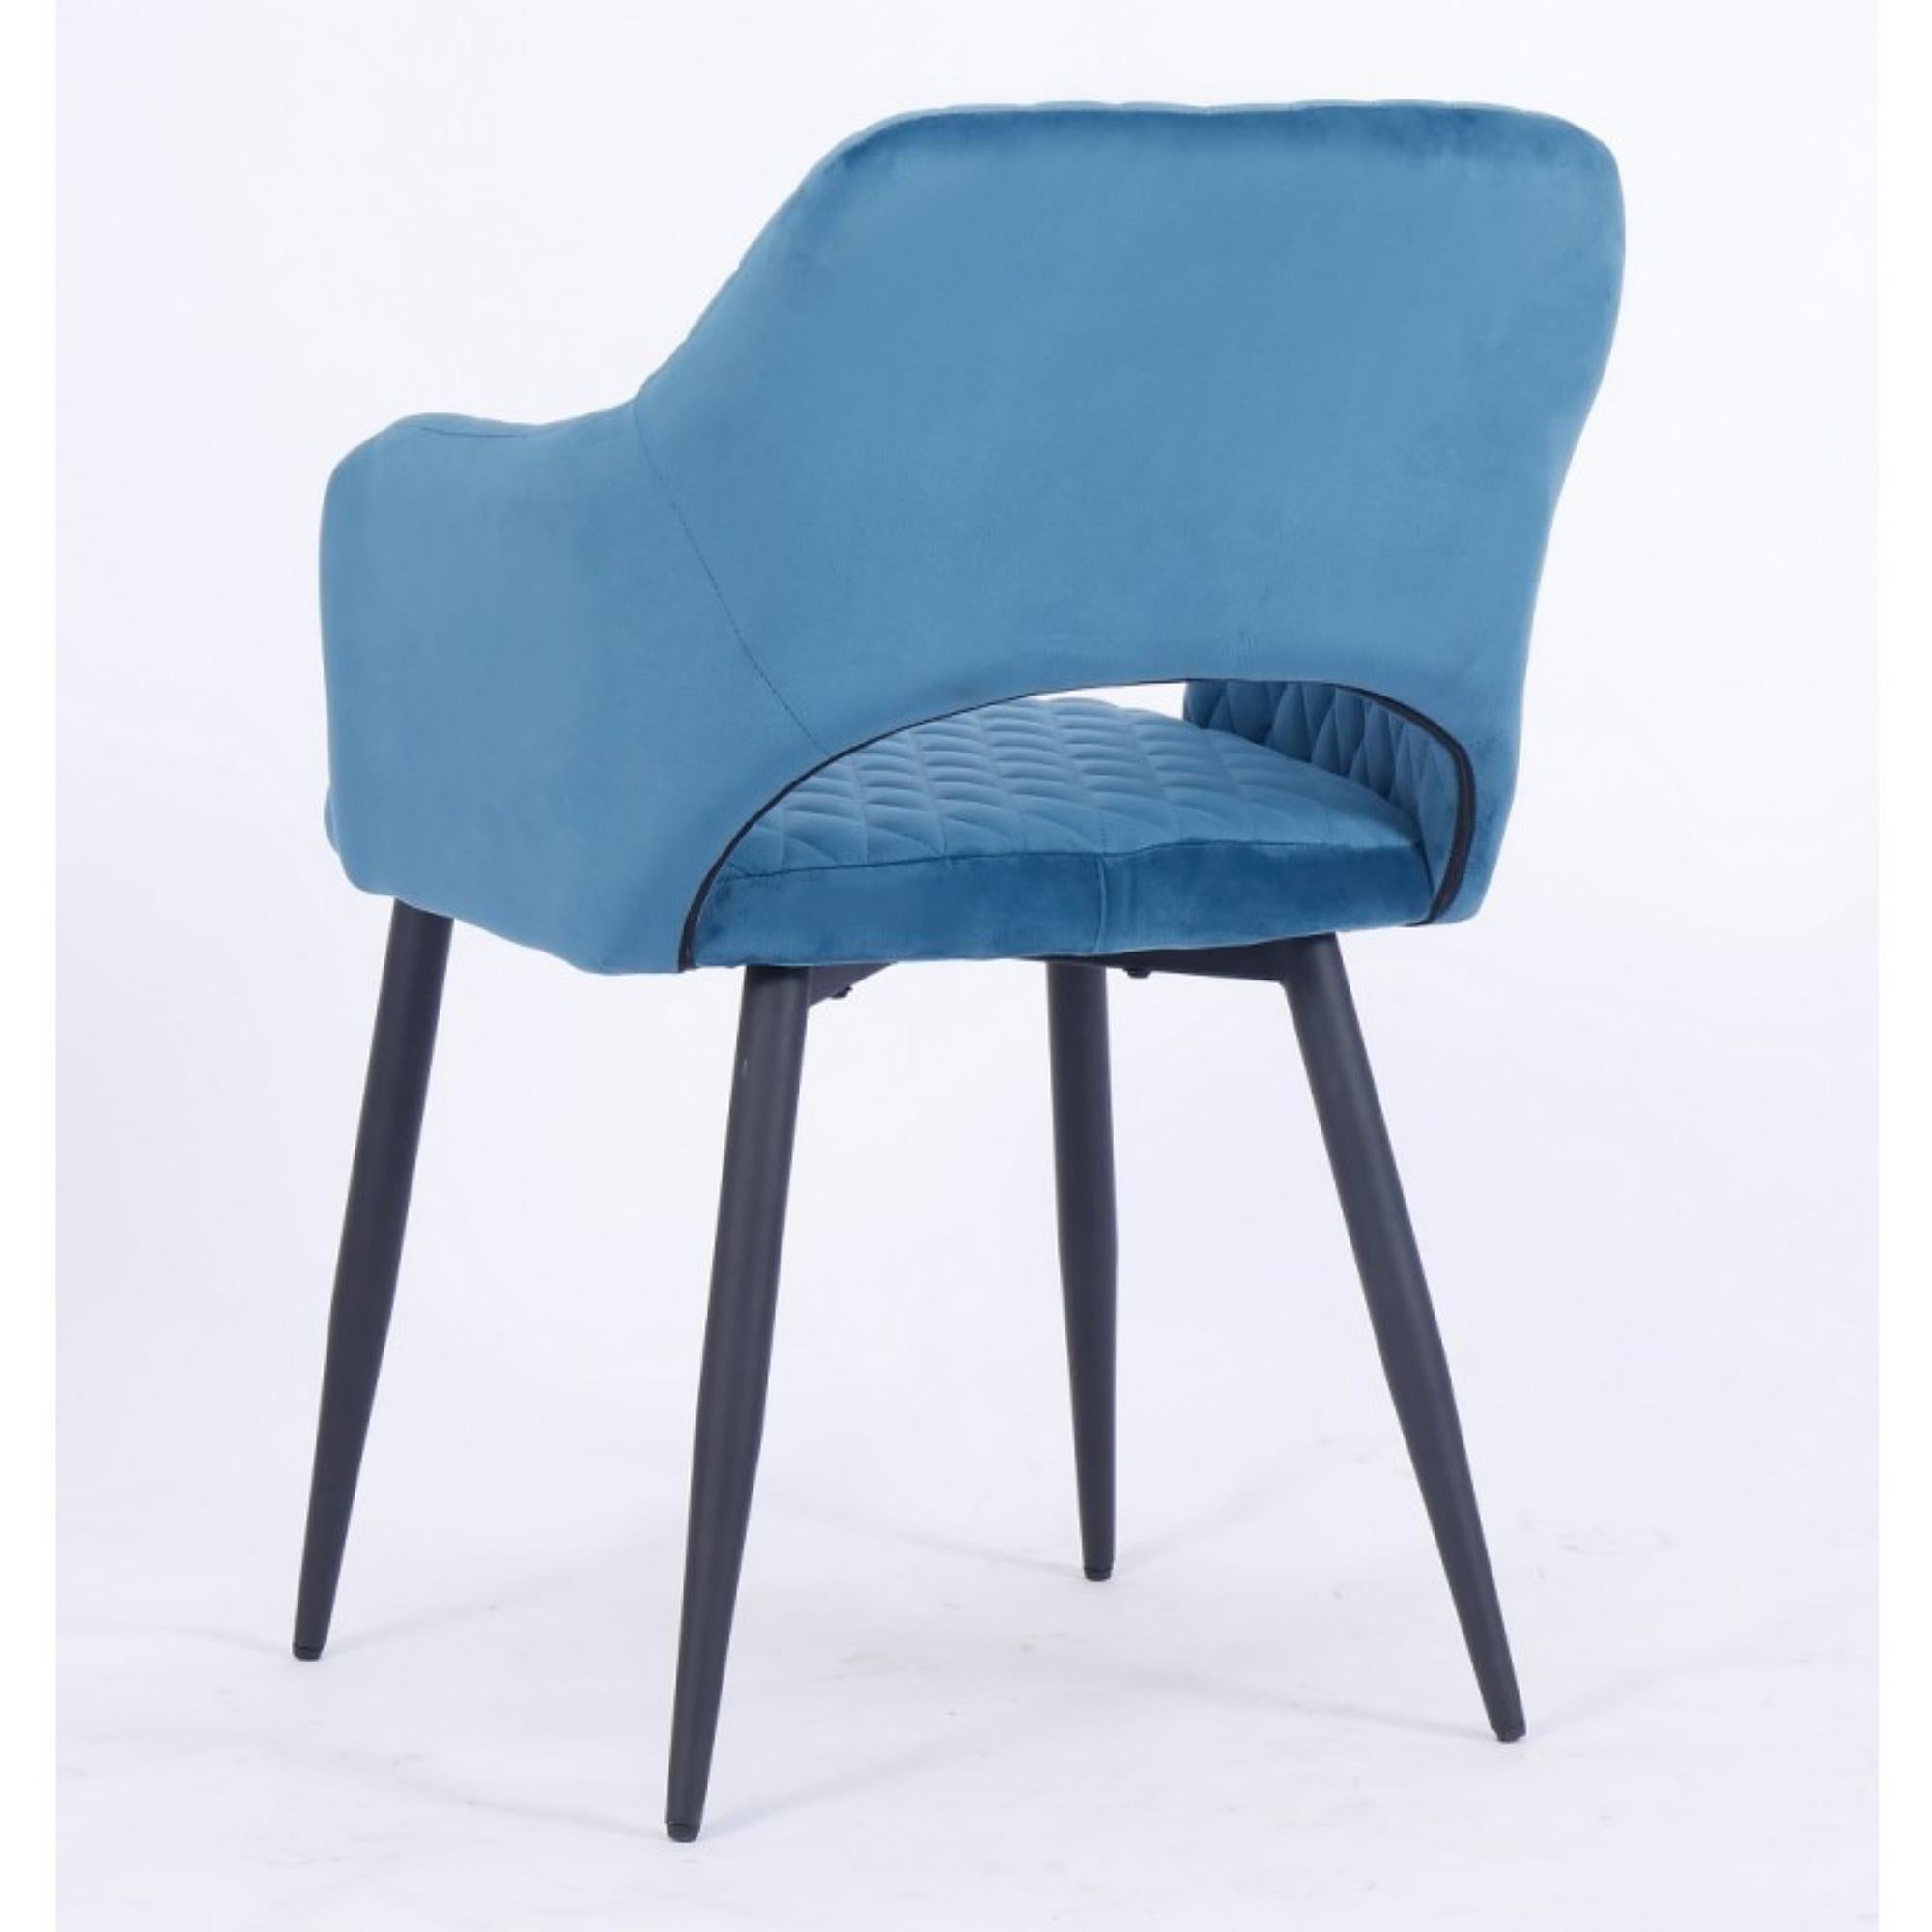 Spanish Pair of Dark Turquoise Velvet Upholstered Metal Armchair New For Sale